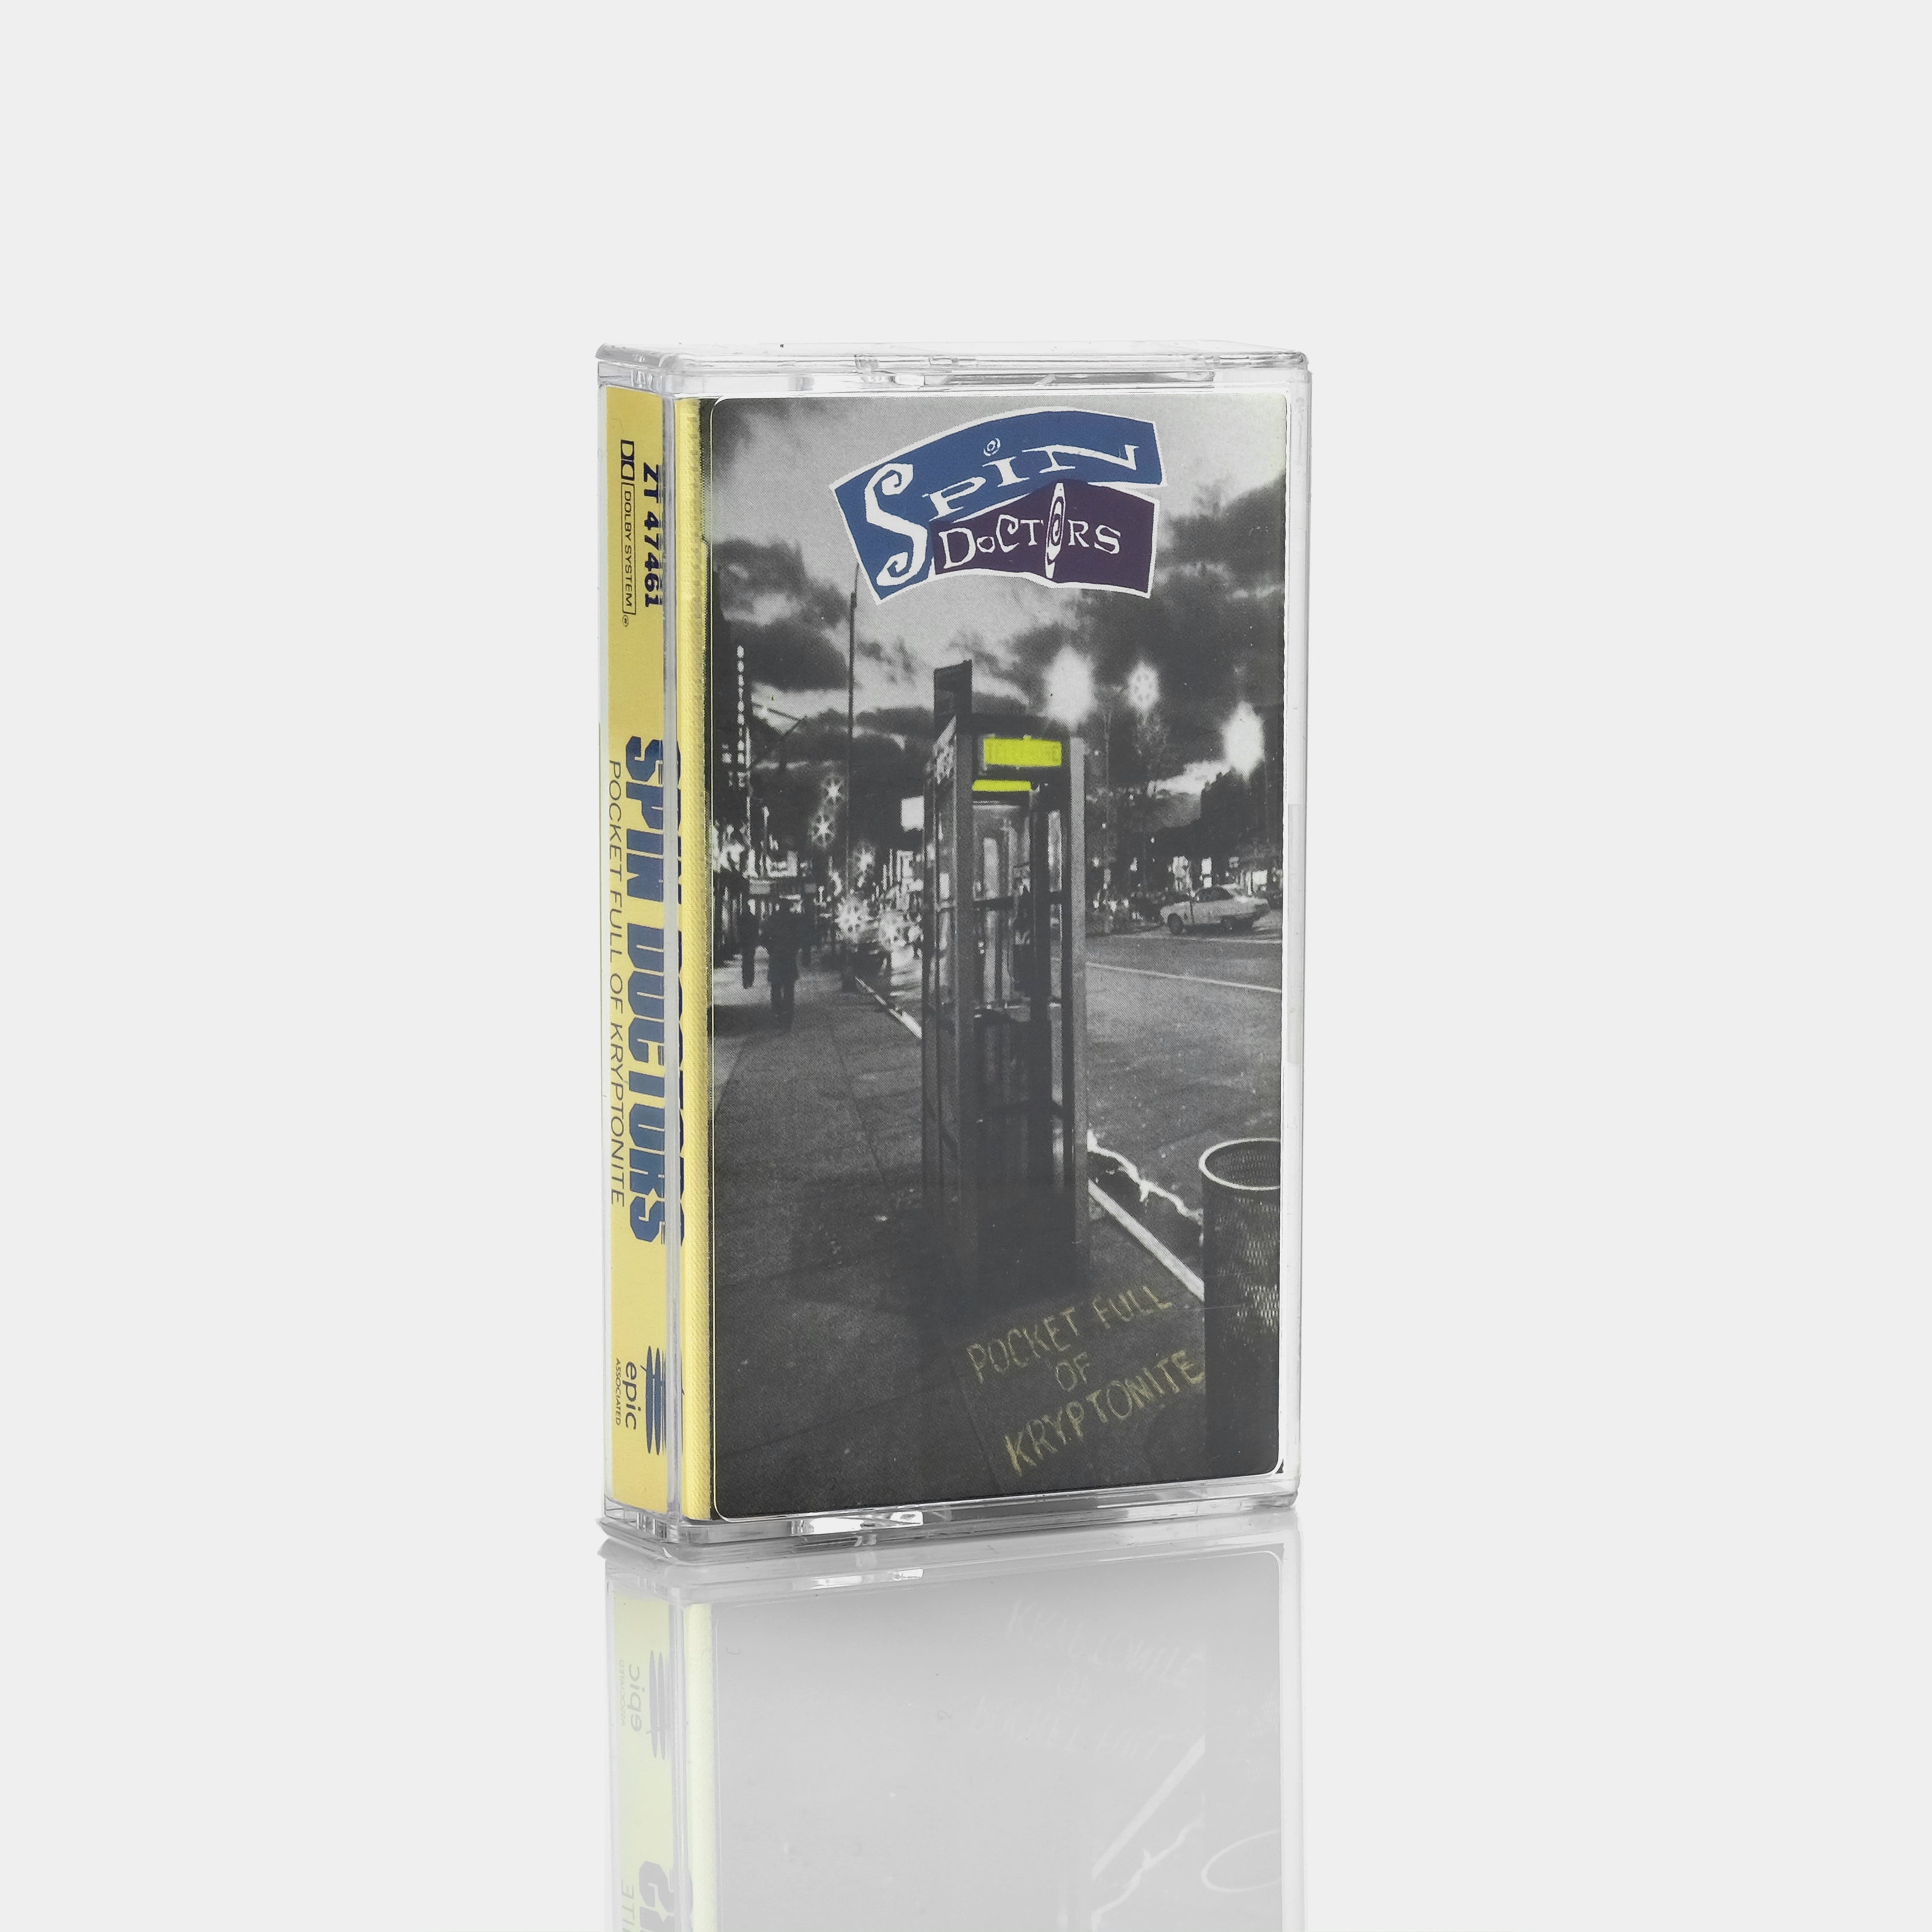 Spin Doctors - Pocket Full of Kryptonite Cassette Tape